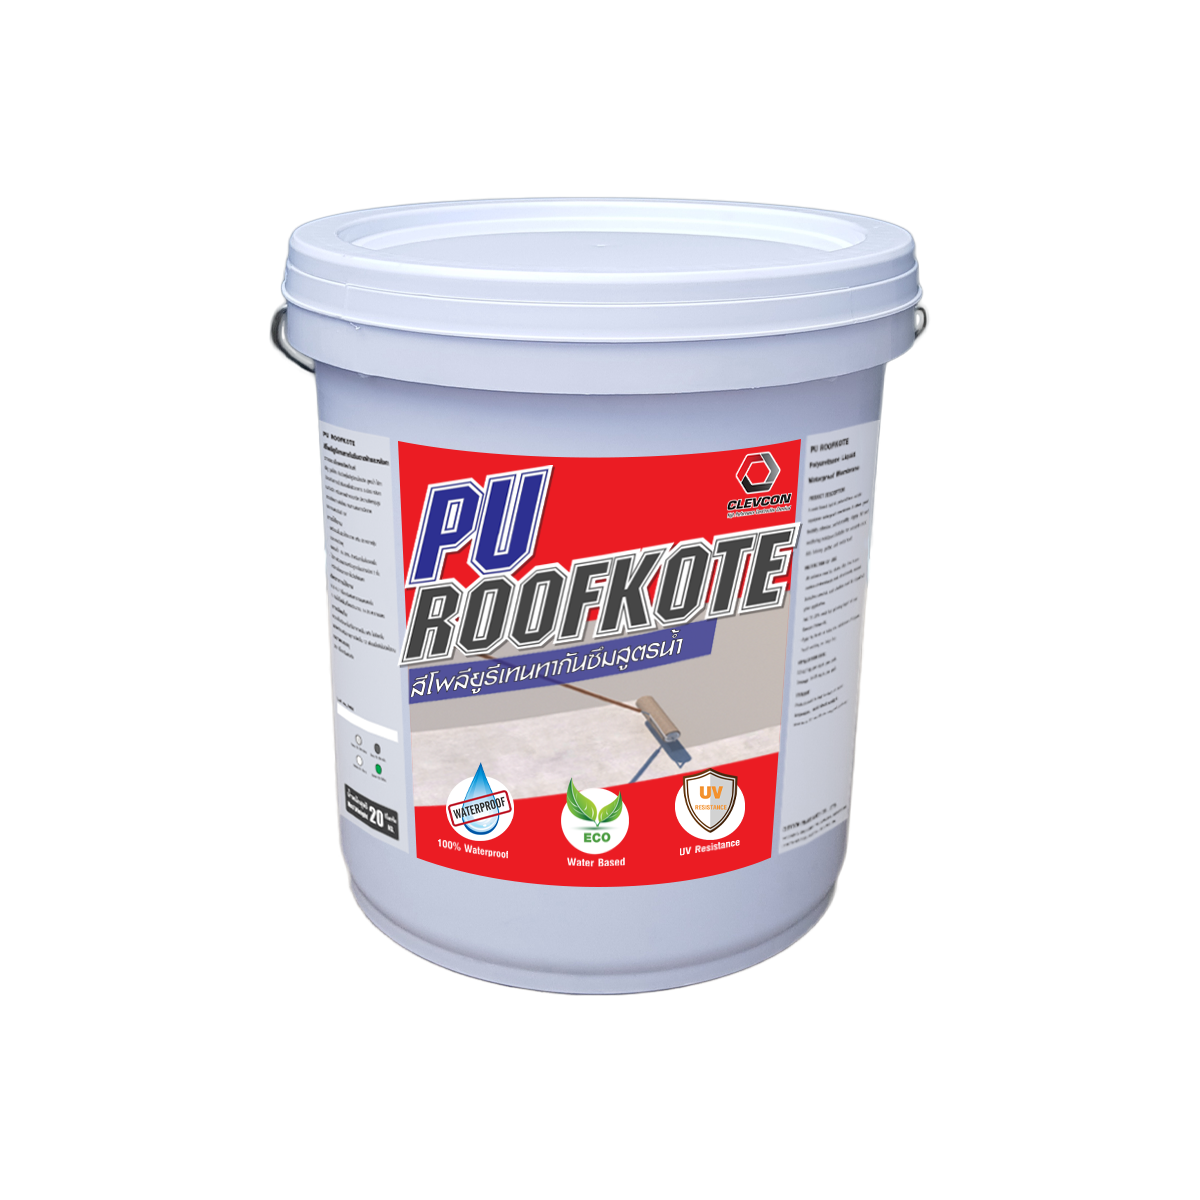 PU Roofkote Water Based Polyurethane Waterproof Coating สีโพลียูรีเทนทากันซึมสูตรน้ำ